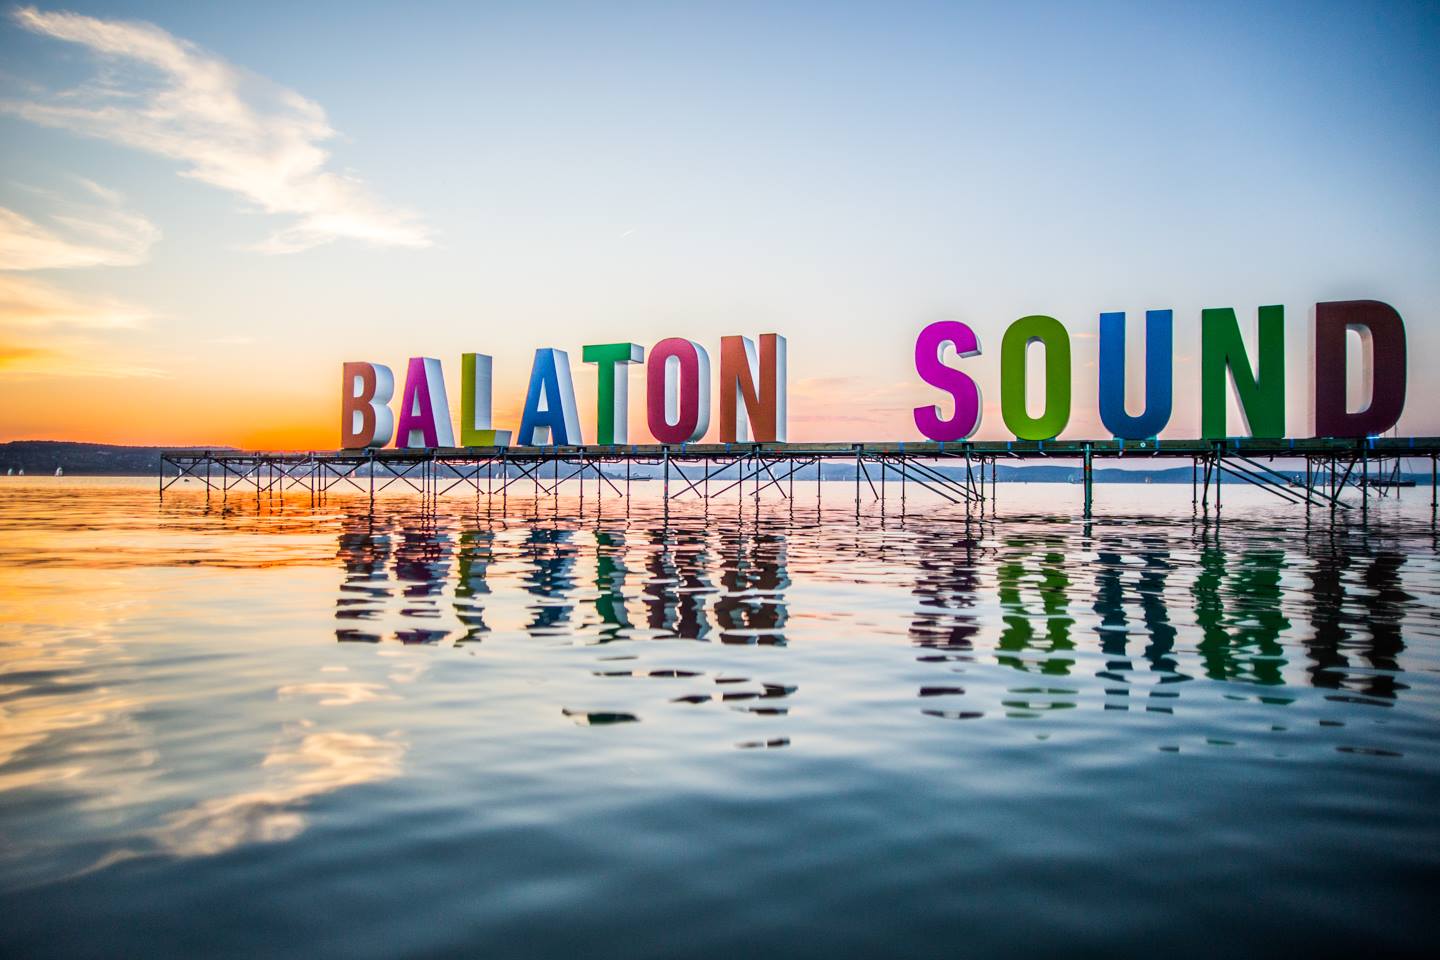 Balaton Sound festival by the Lake Balaton, Hungary